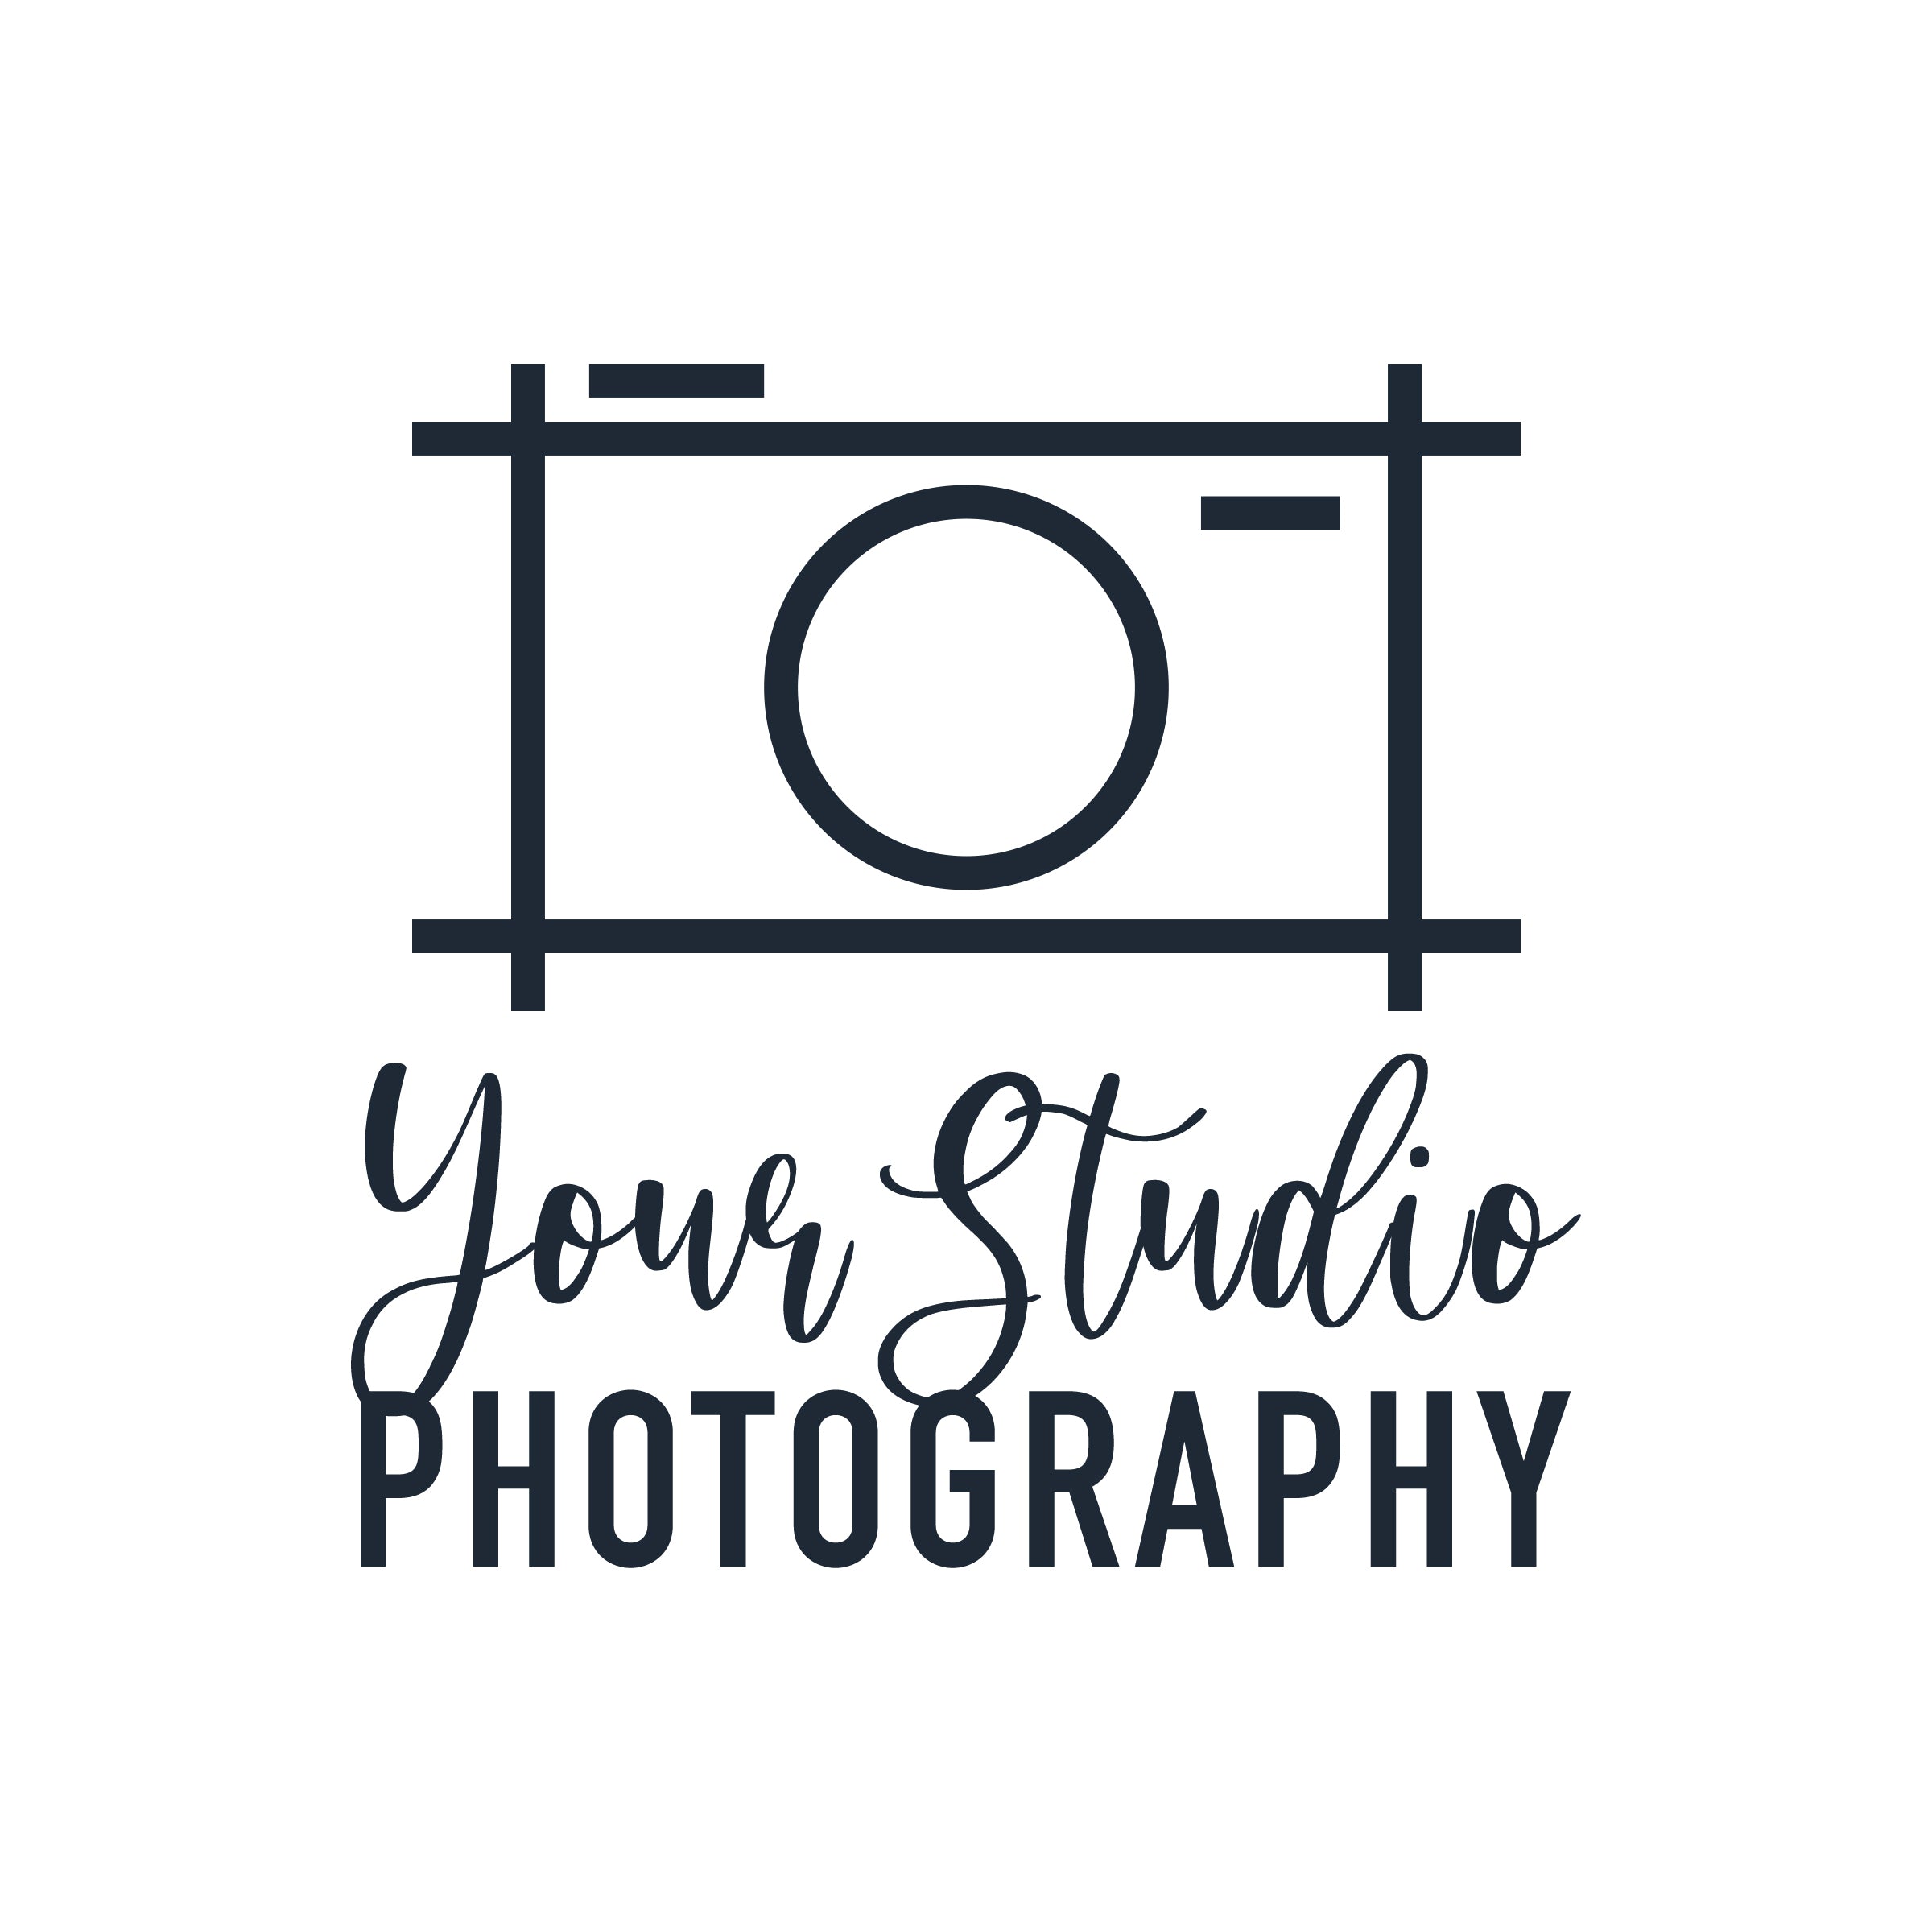 25 Unique Camera Logos for Photographers - BP4U Guides